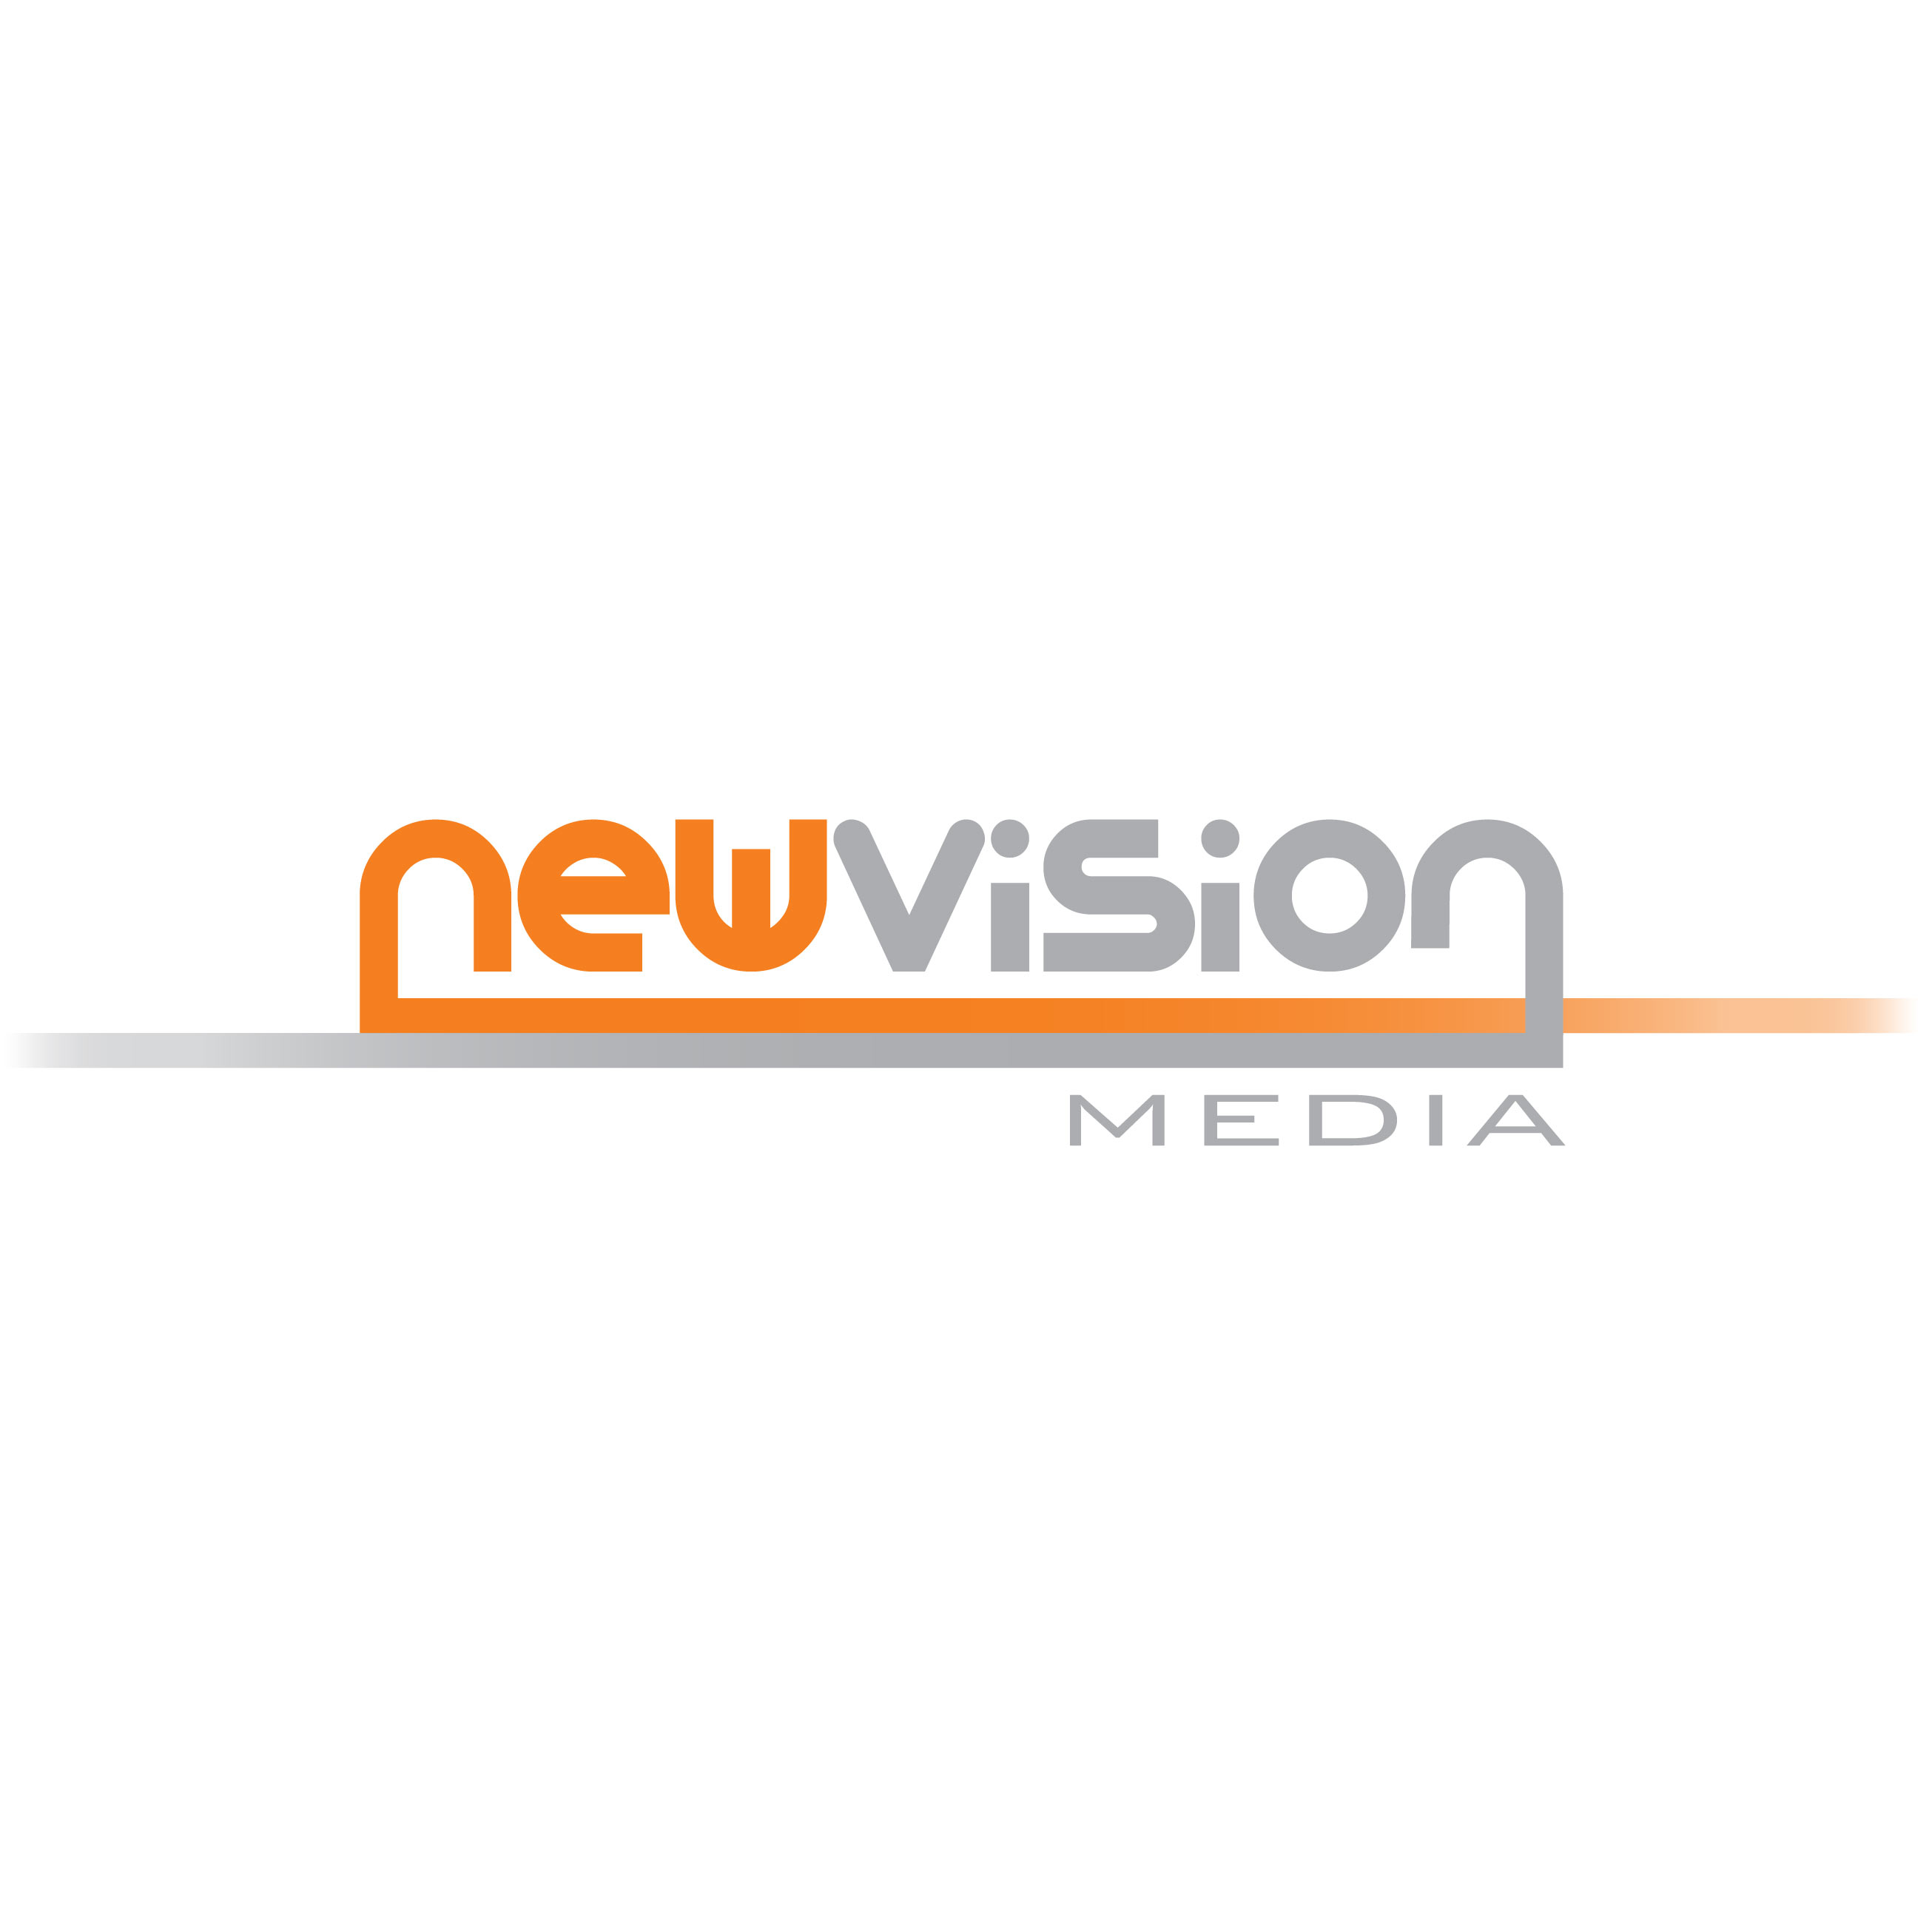 New Vision Media